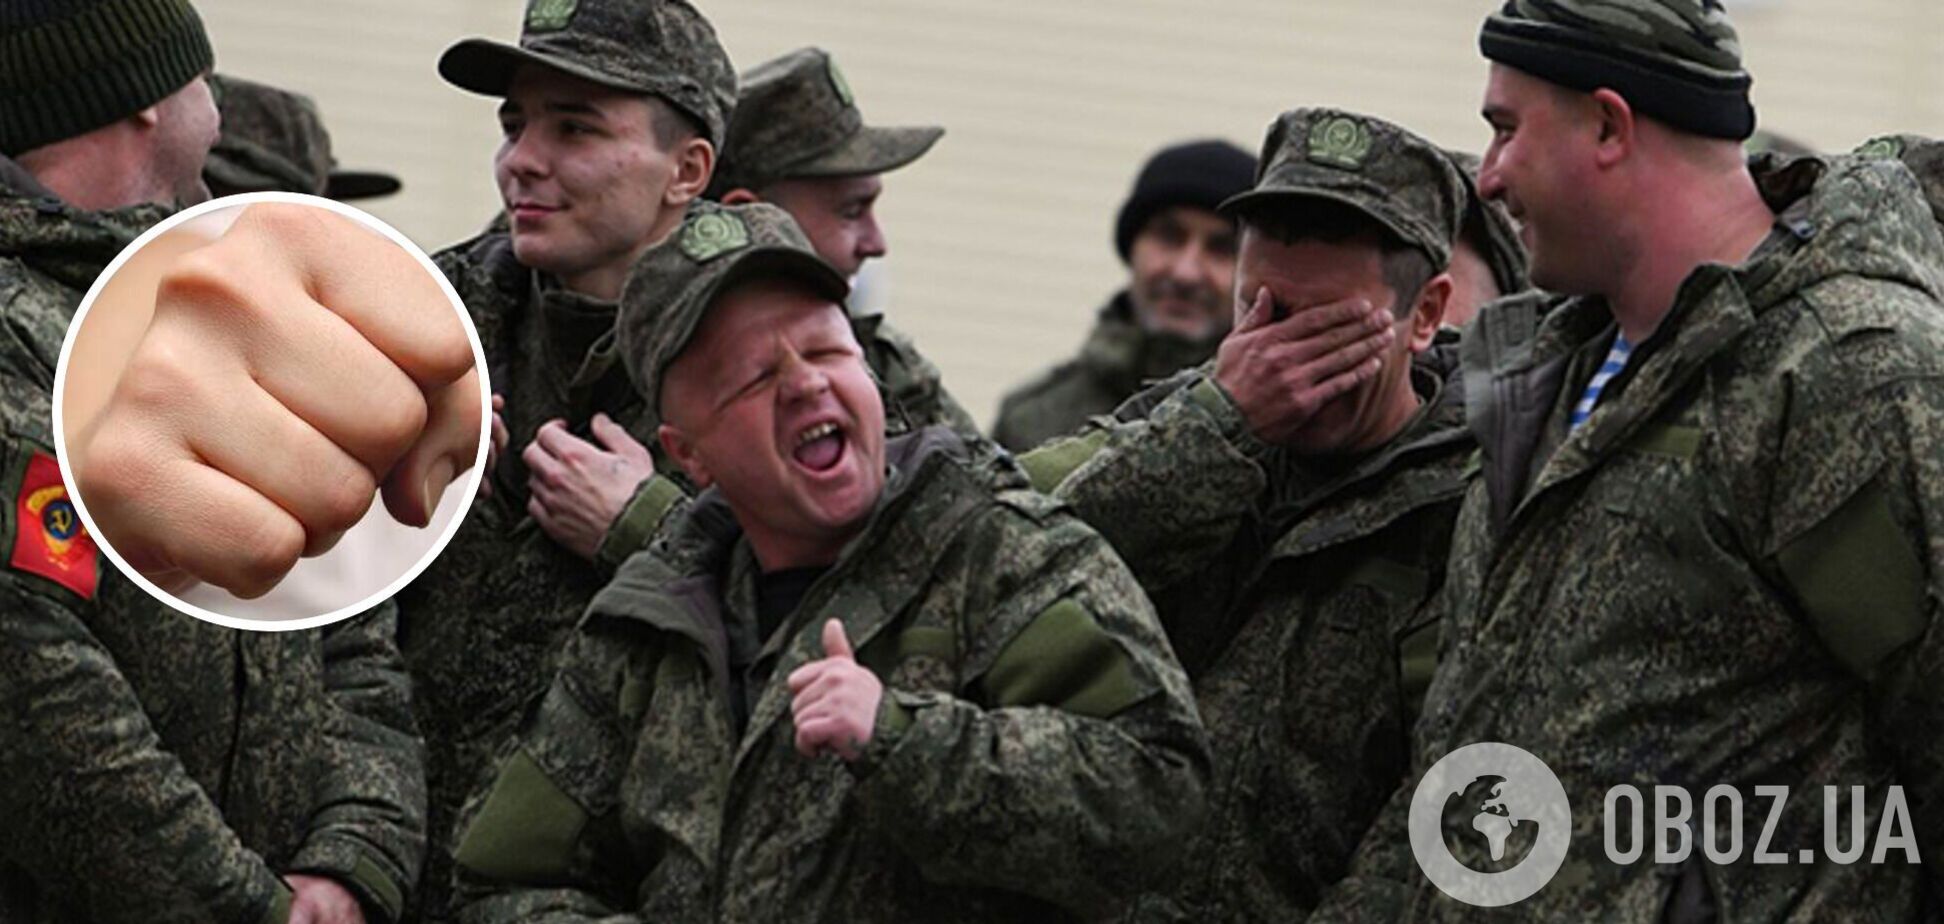 Скоро не буде кому командувати: в армії РФ підлеглі все частіше вбивають командирів, щоб не йти на смерть